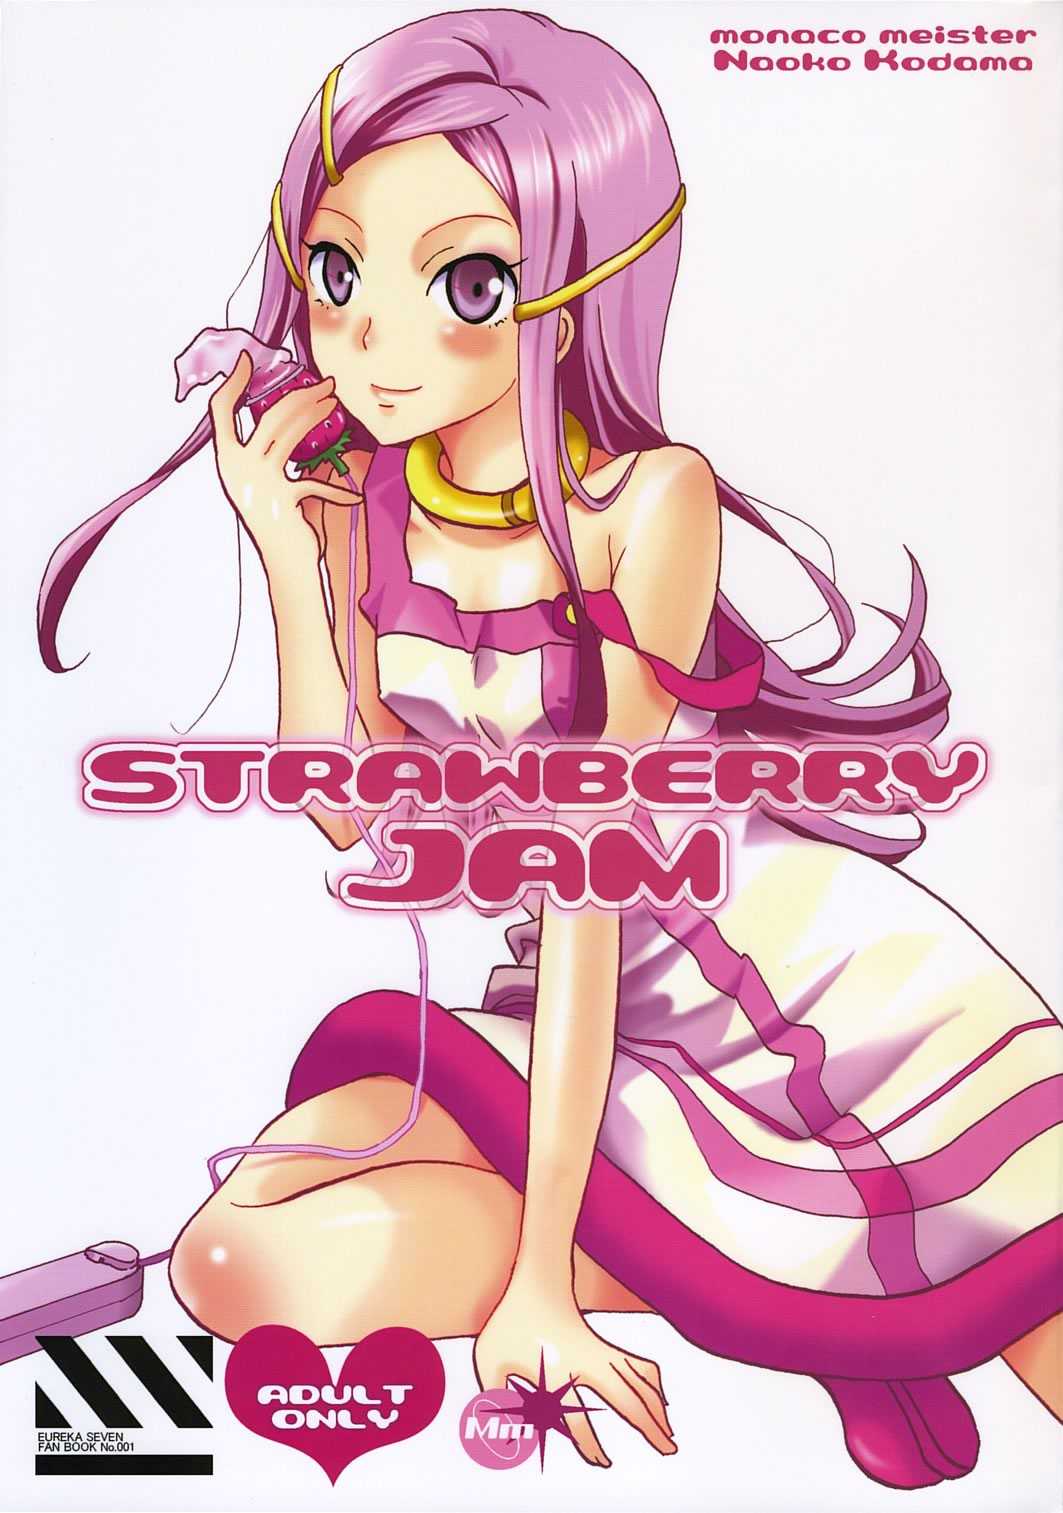 [Monaco Meister Kodama Naoko)] strawberry jam (Koukyoushihen Eureka seveN) [モナコマイスター (コダマナオコ)] STRAWBERRY JAM (交響詩篇エウレカセブン)